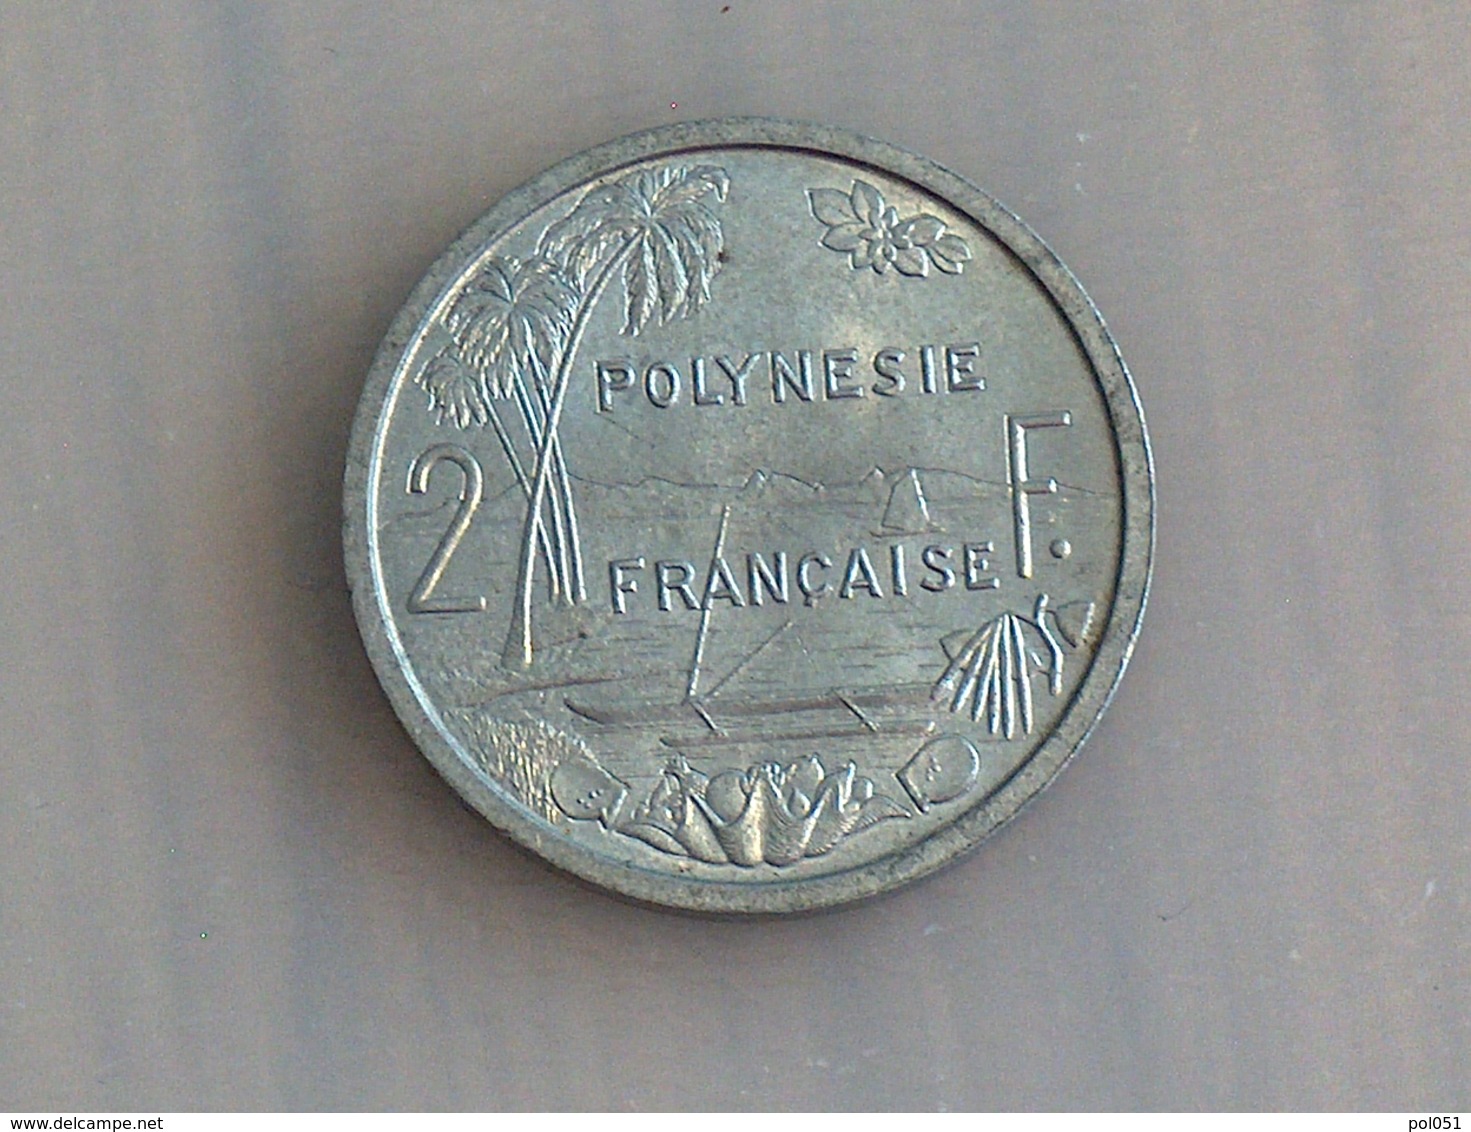 Polynesie Française 2 Francs 1965 - Polynésie Française